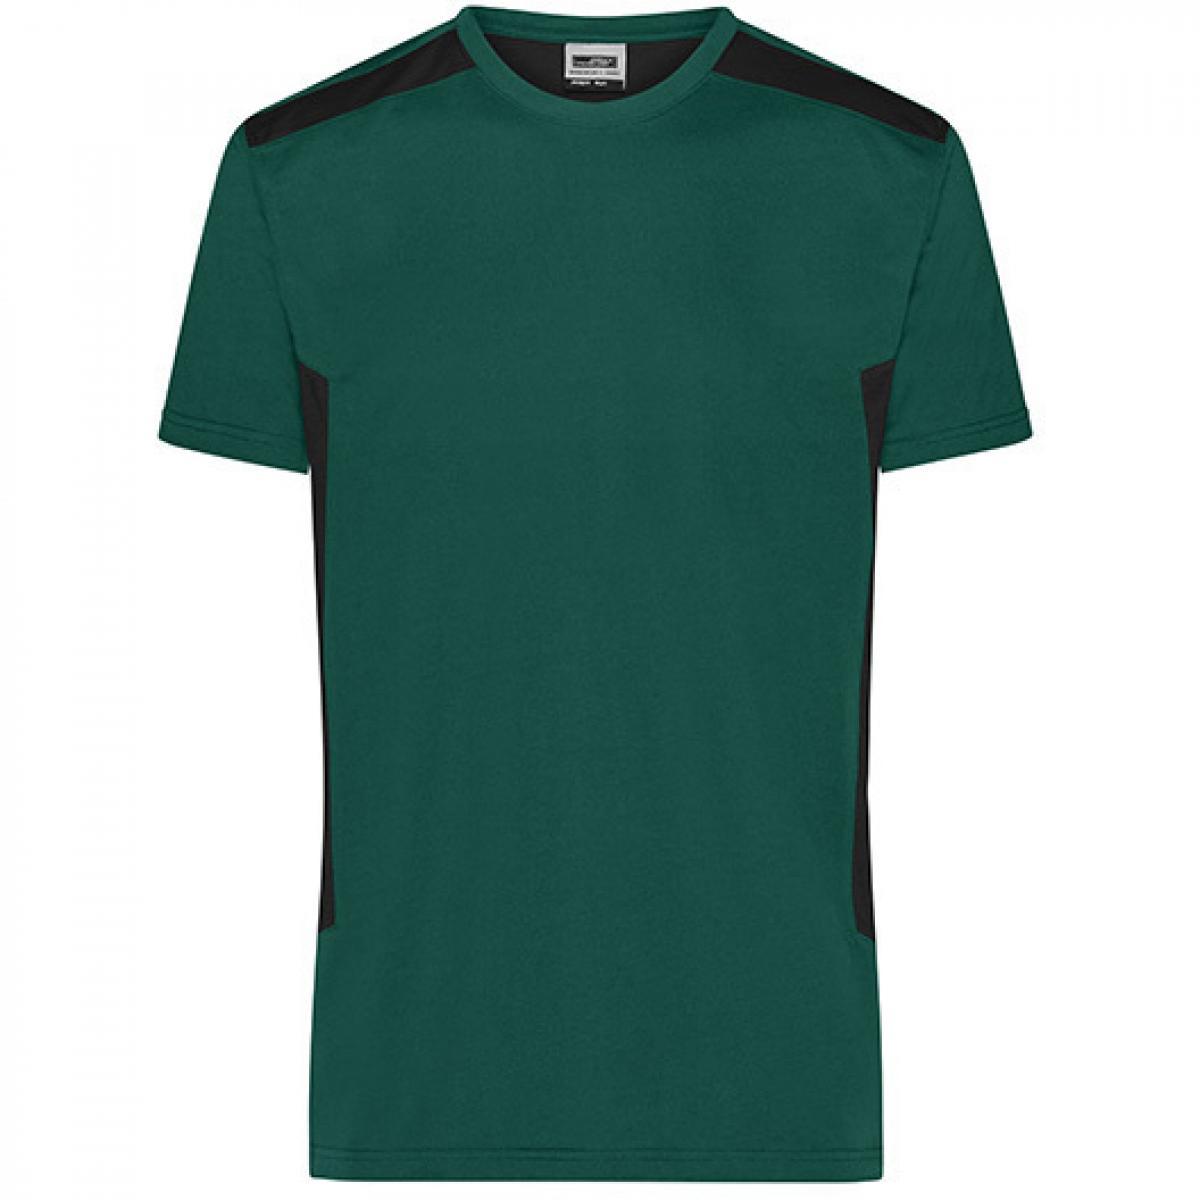 Hersteller: James+Nicholson Herstellernummer: JN1824 Artikelbezeichnung: Herren T, Men‘s Workwear T-Shirt -STRONG-Waschbar bis 60 °C Farbe: Dark Green/Black